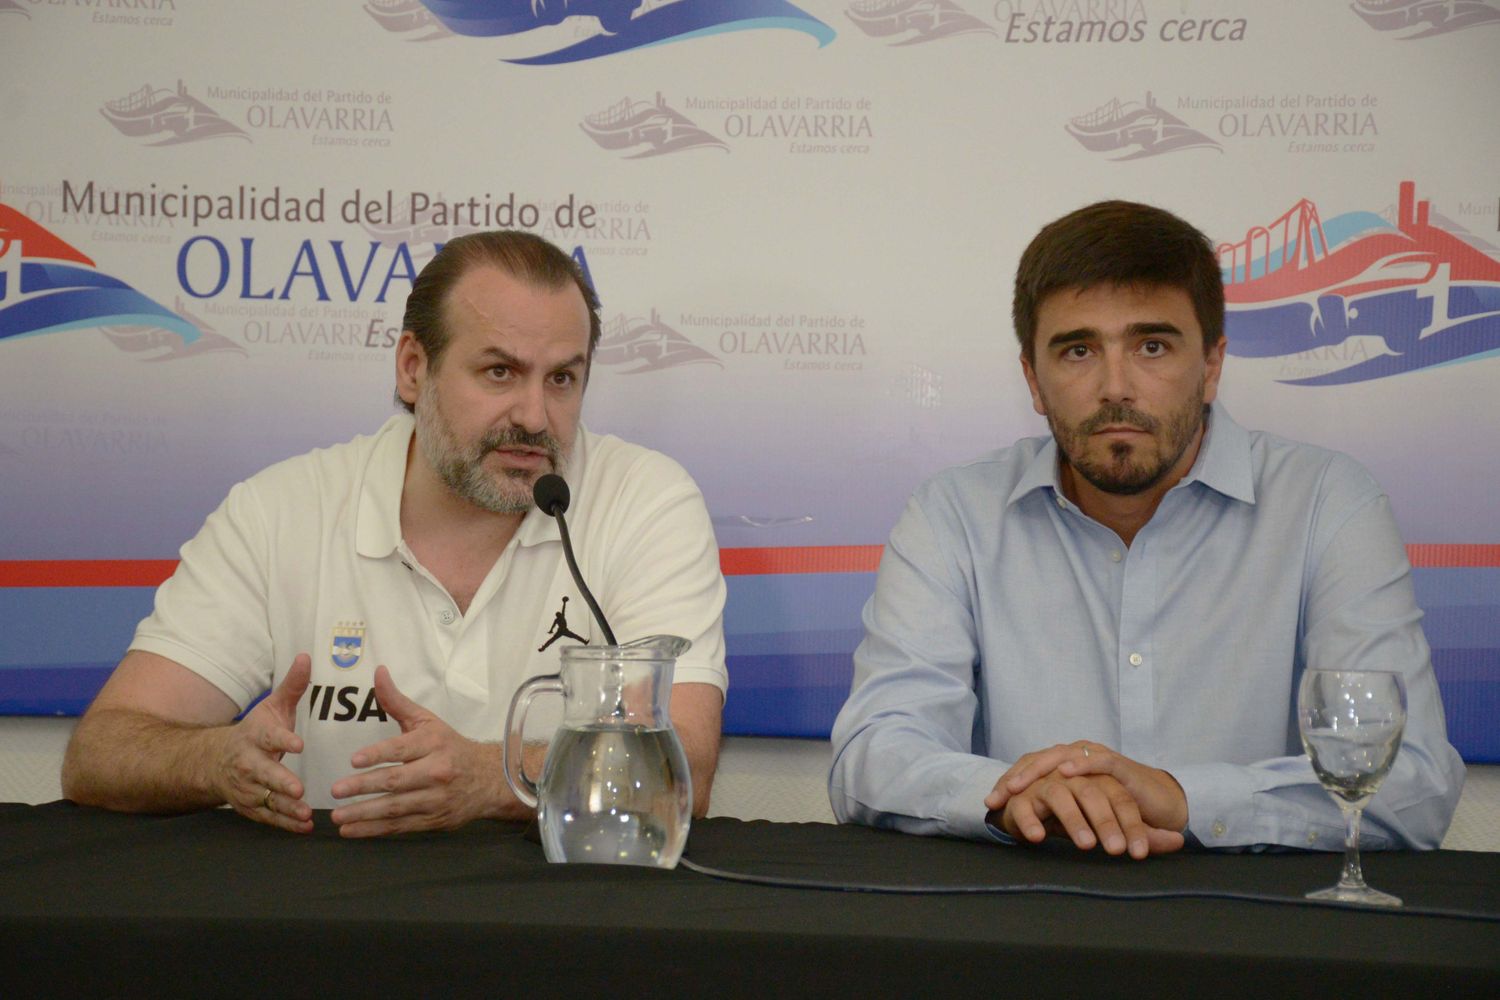 La Selección argentina de básquet jugará en Olavarría